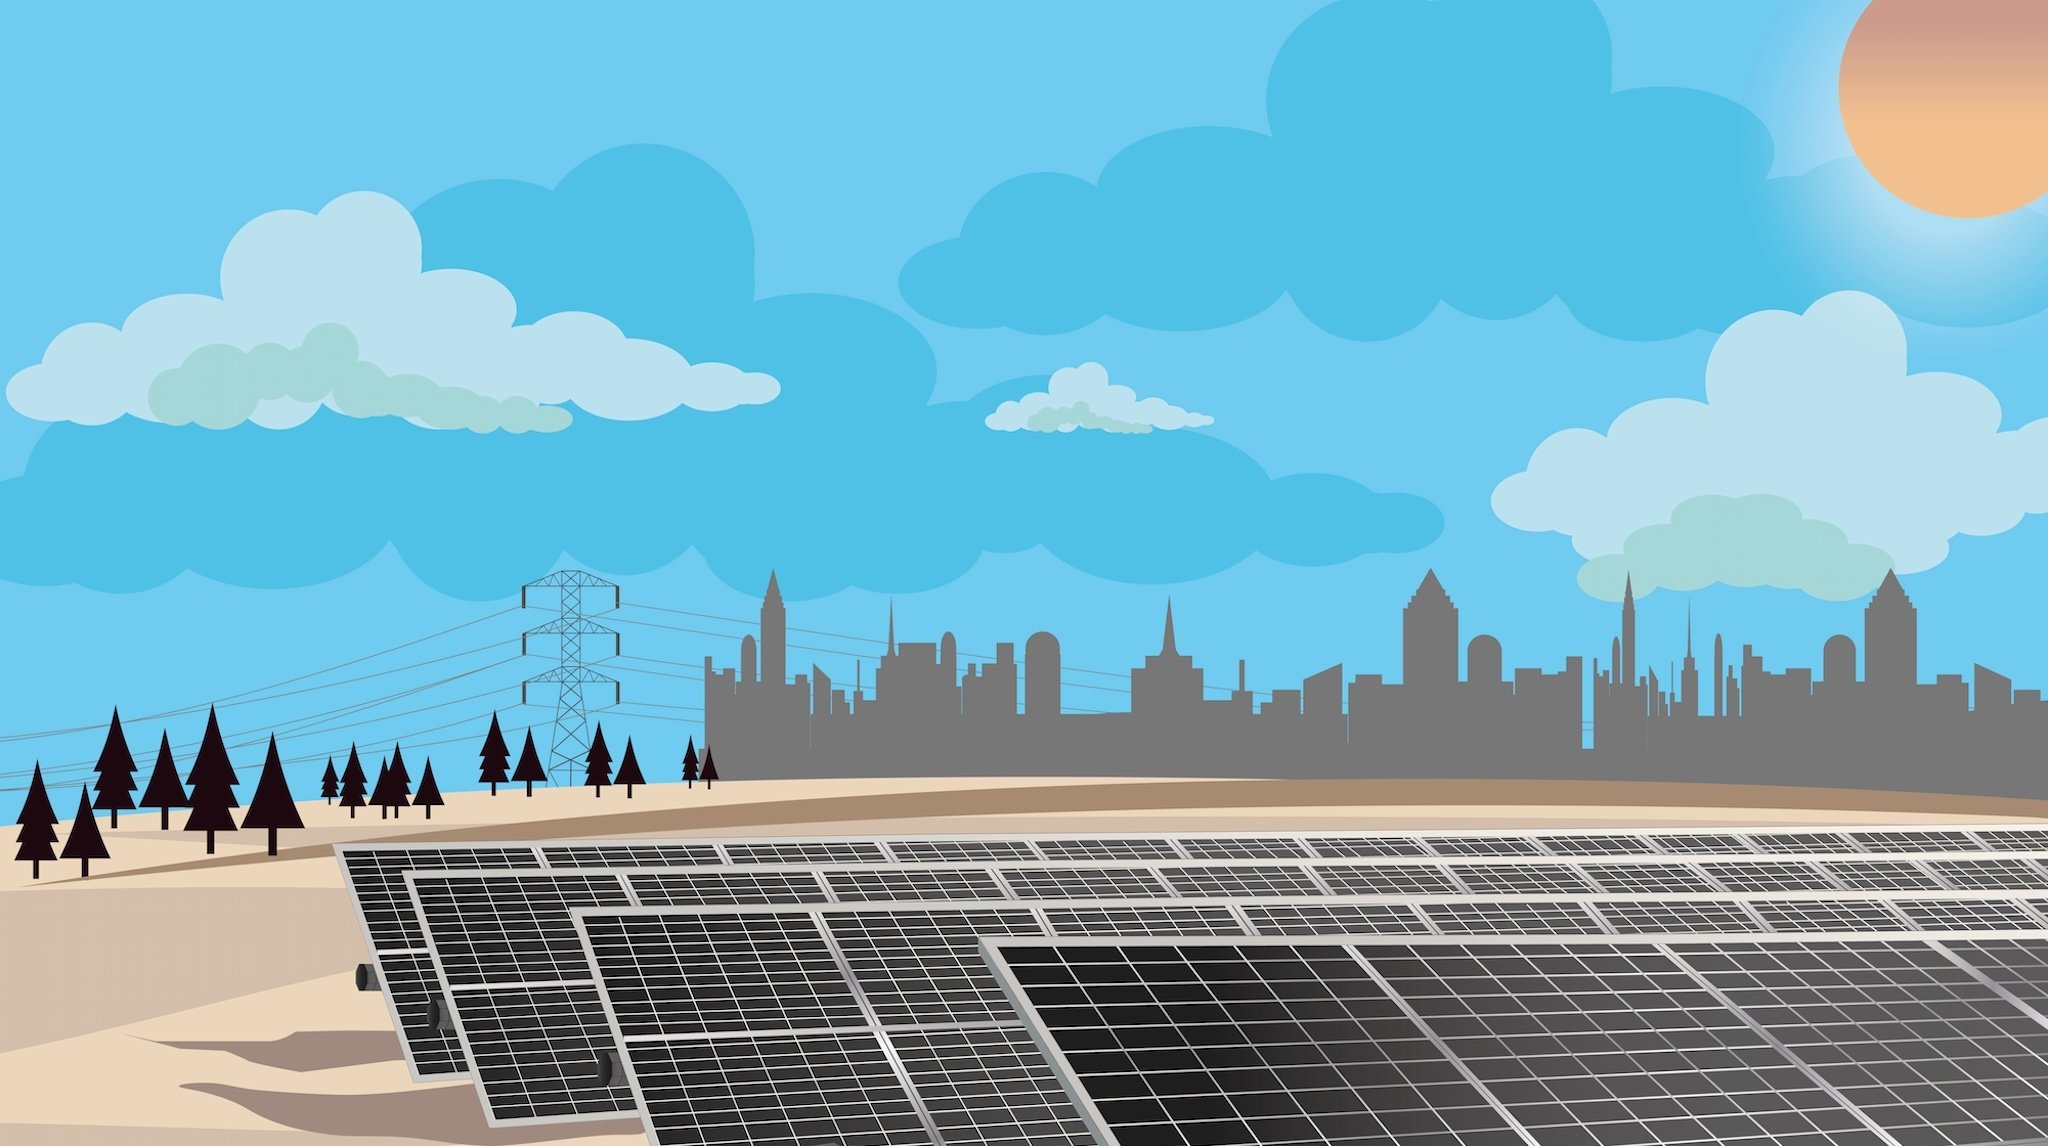 Illustration eines Solarparks